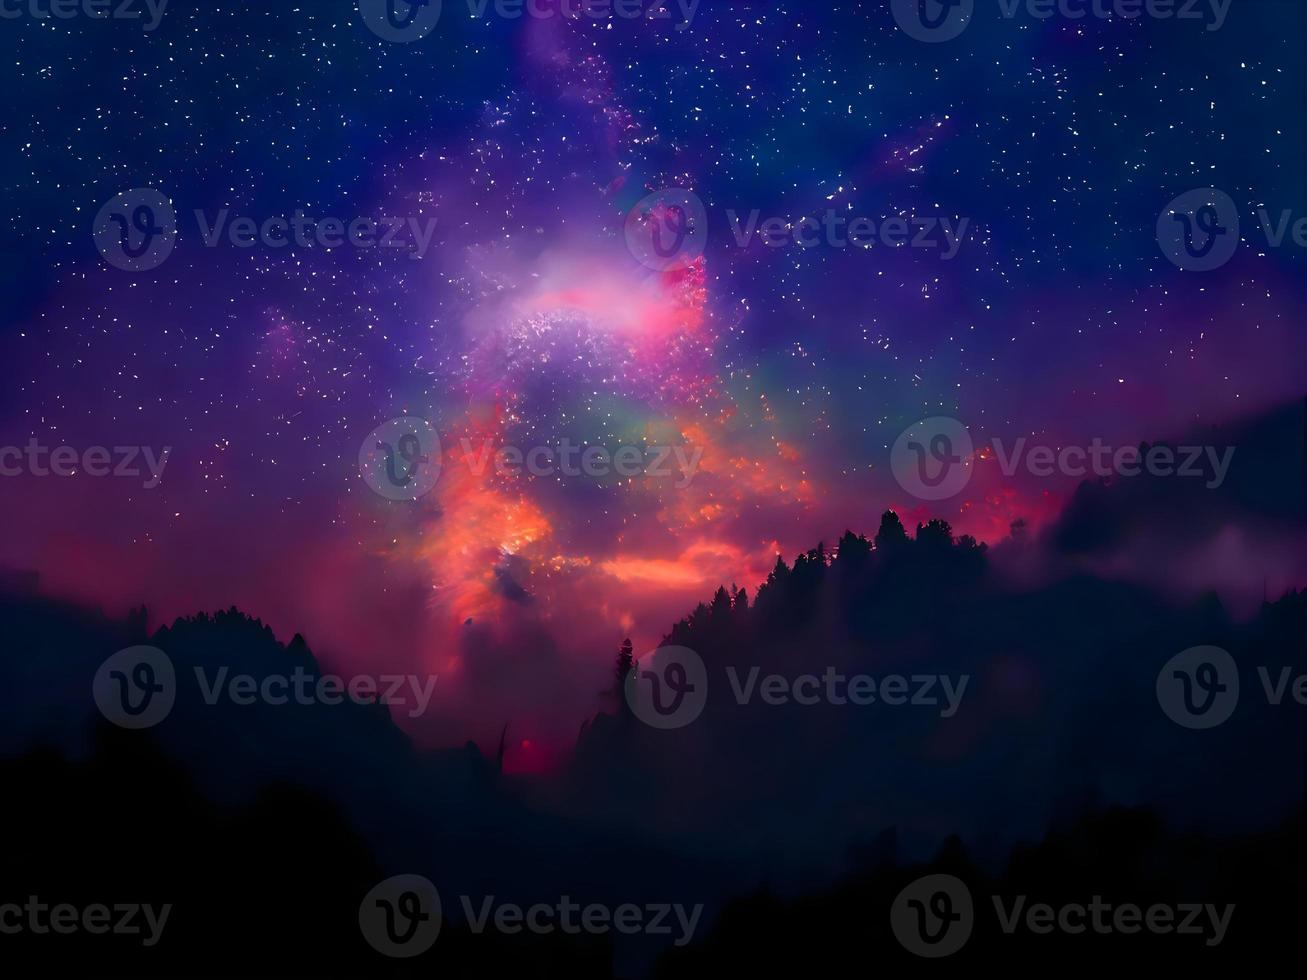 paysage de nuit montagne et voie lactée arrière-plan galaxie notre galaxie, longue exposition, faible luminosité photo